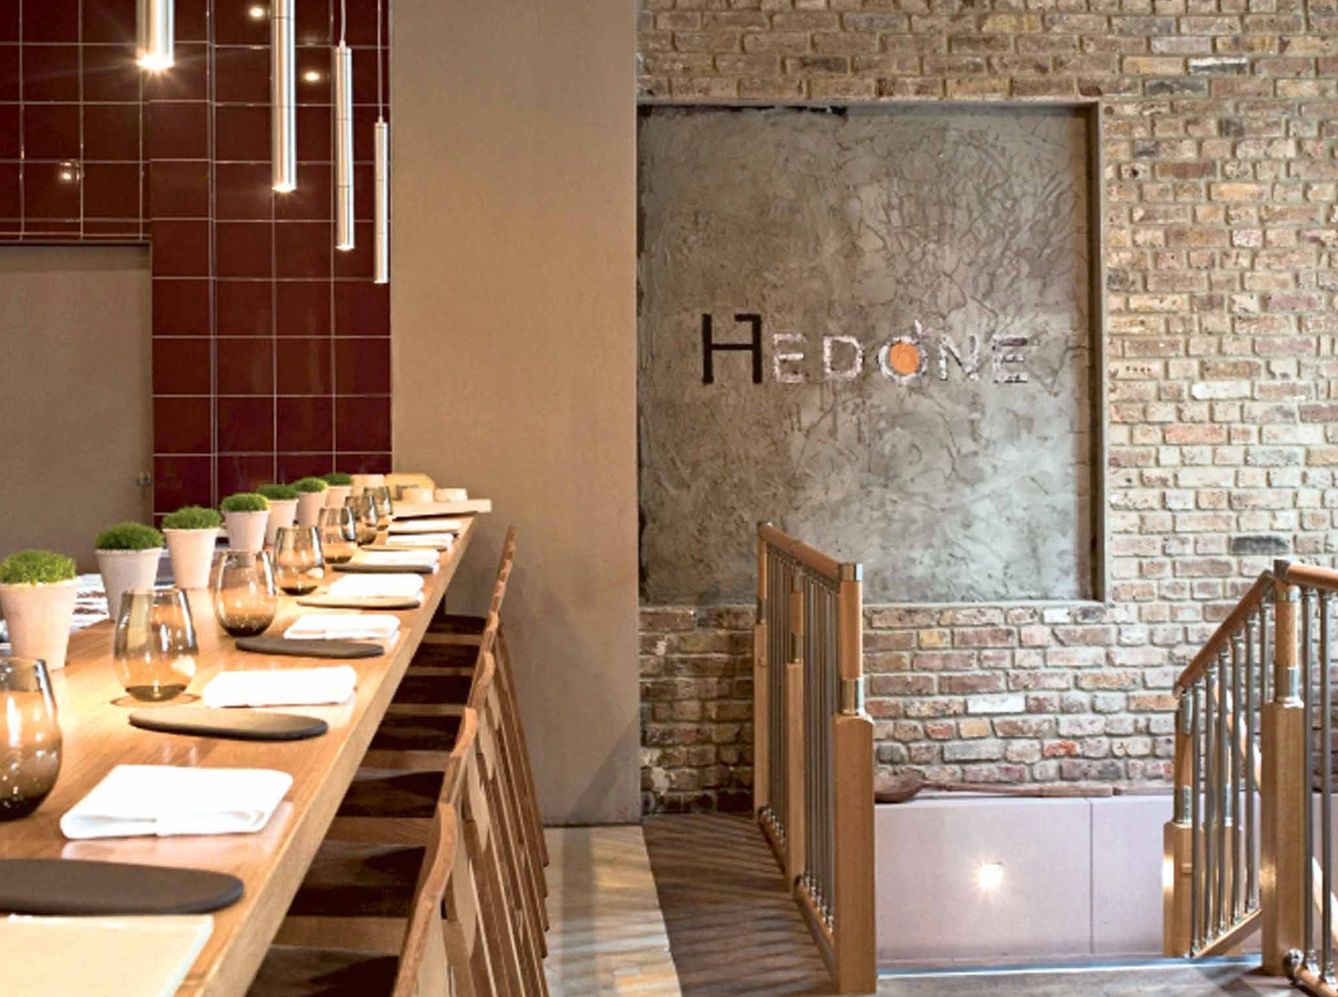 Hedone: el nuevo objeto de deseo gastronómico londinense